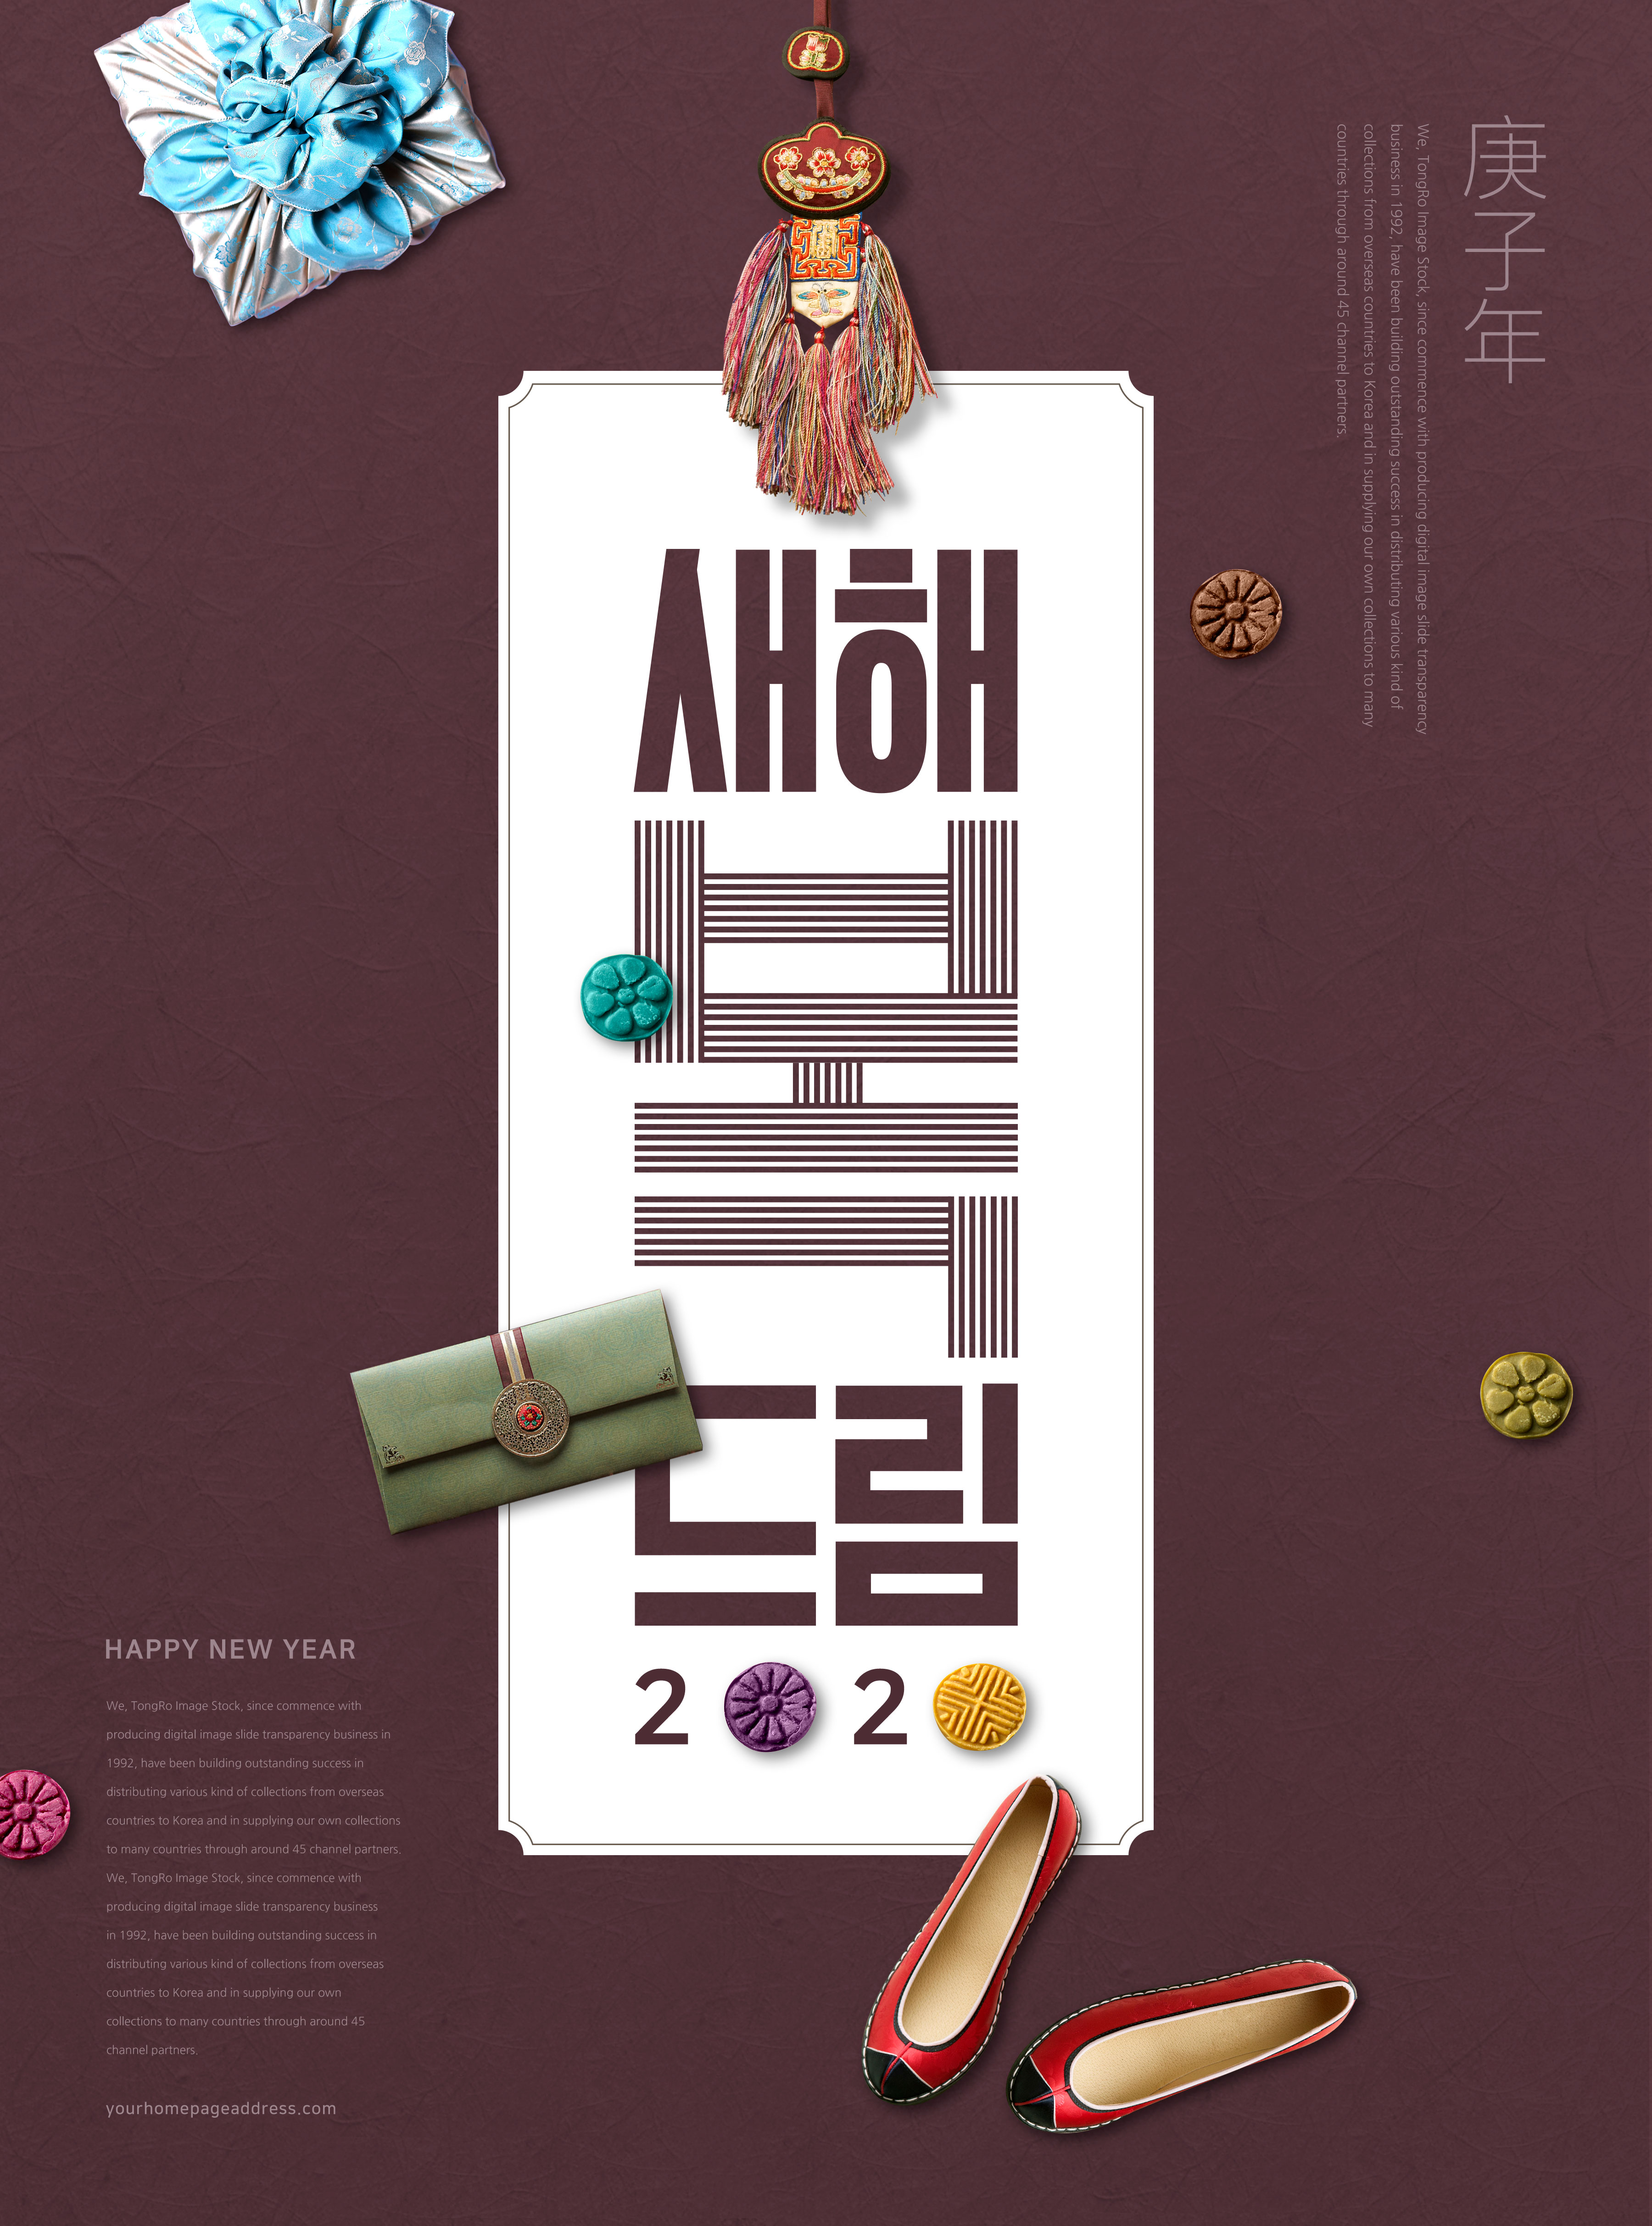 古典风格2020庚子年祝福主题海报模板psd素材插图